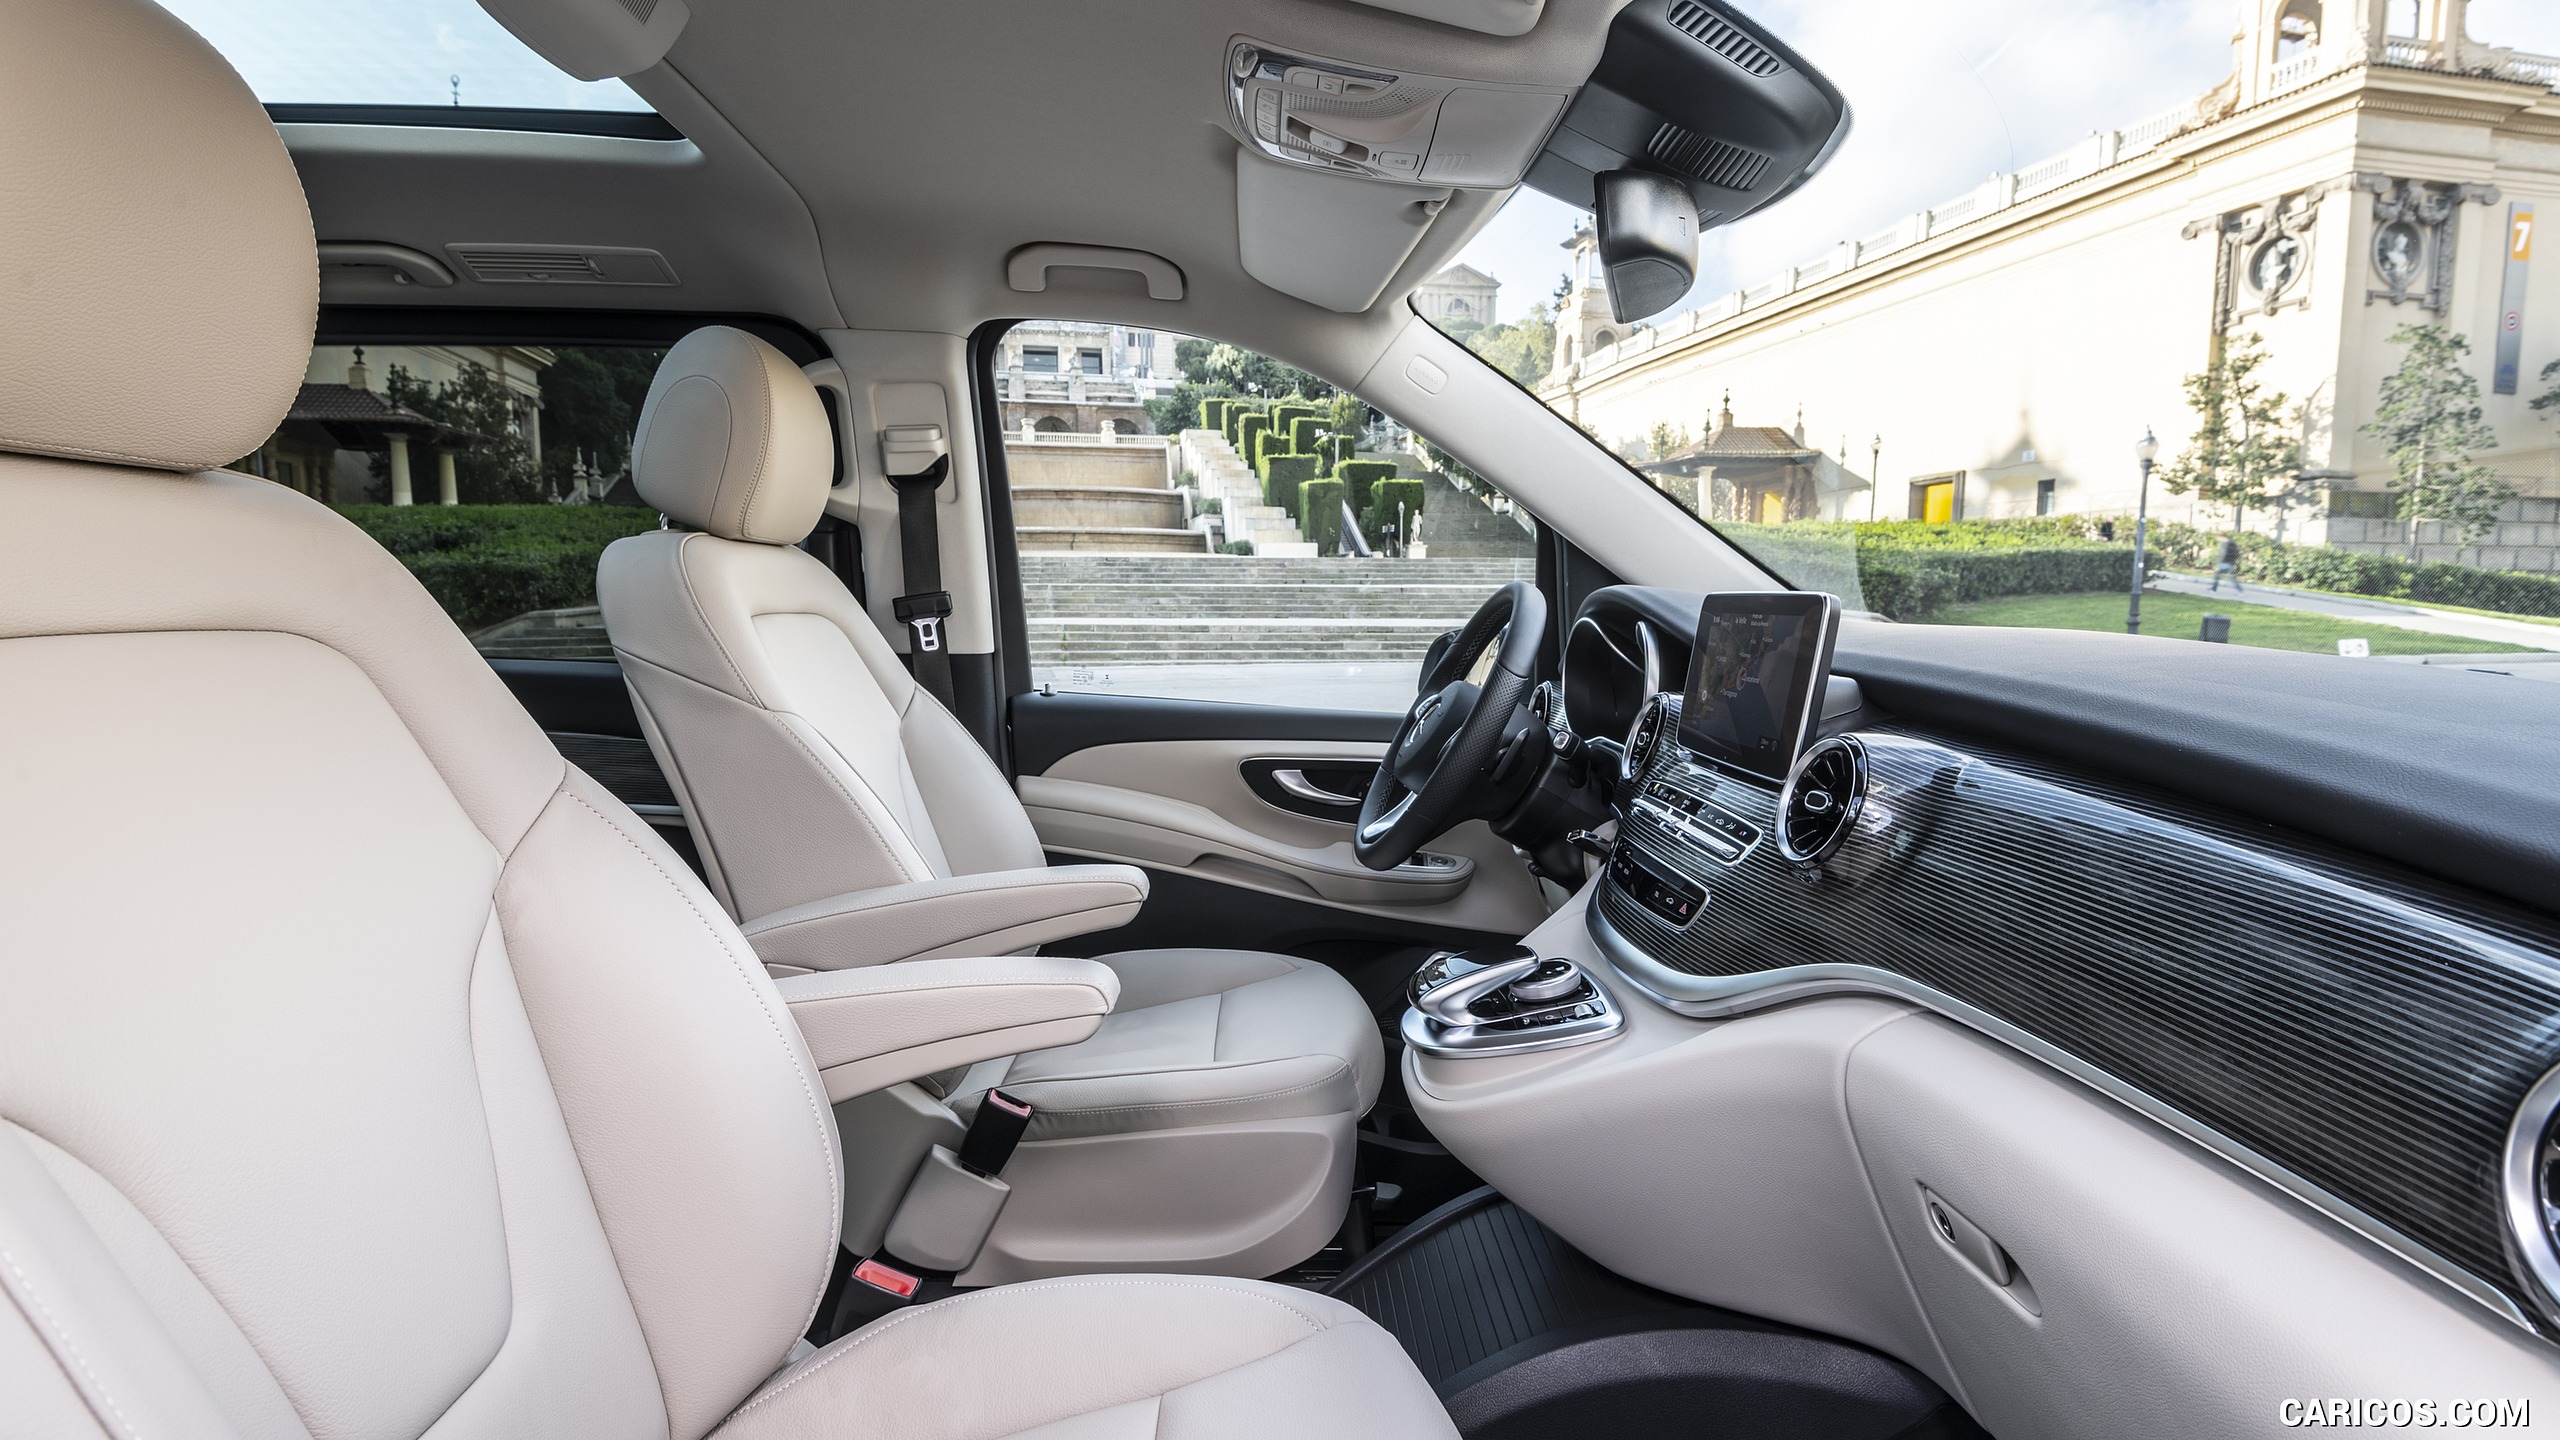 2019 Mercedes-Benz V-Class V300d AVANTGARDE - Interior, Front Seats, #113 of 216